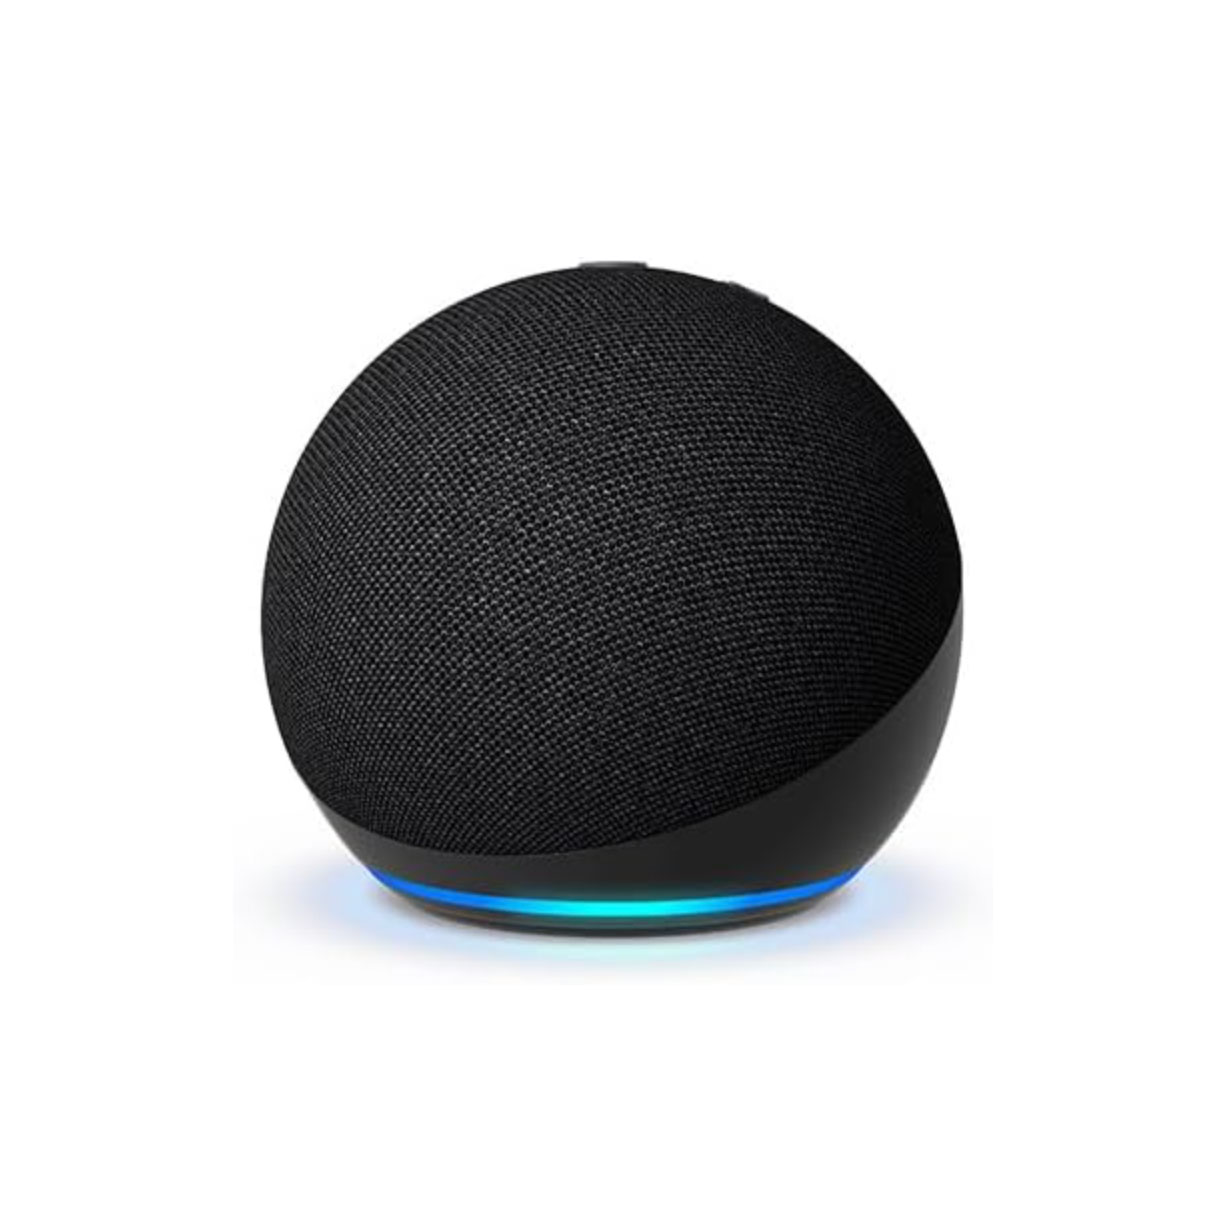 Black round Bluetooth speaker